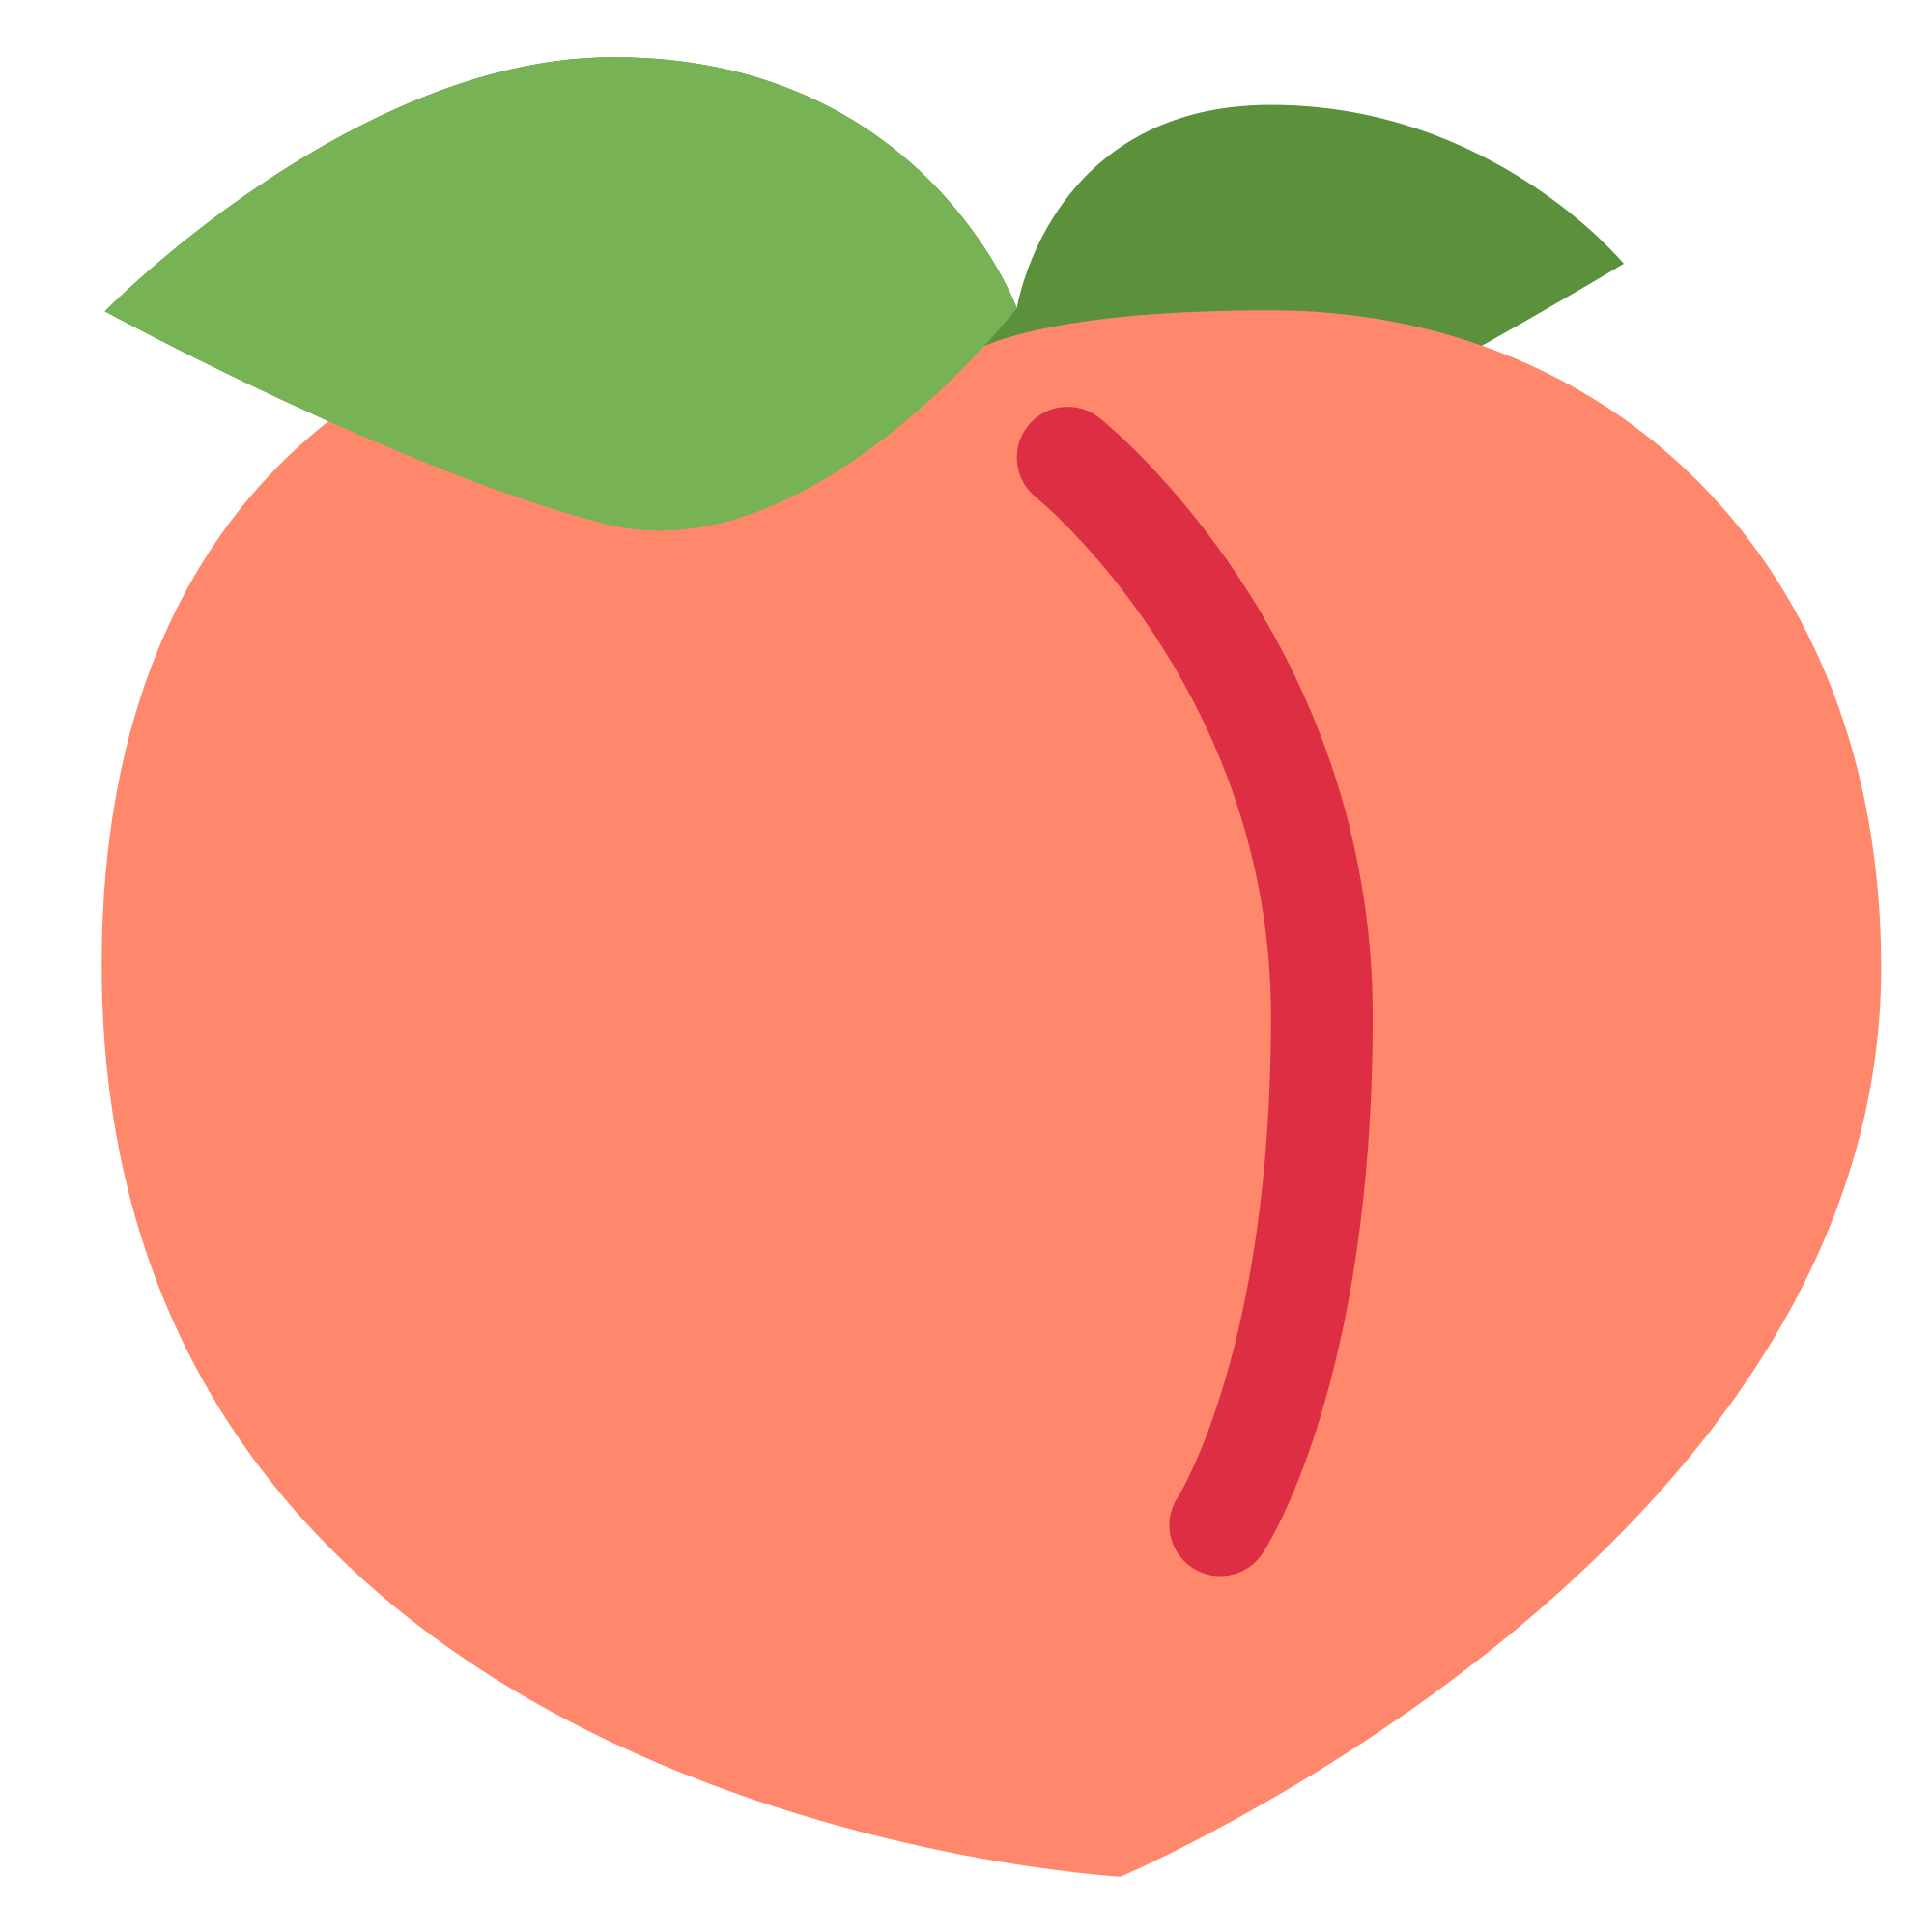 peaches clipart heart